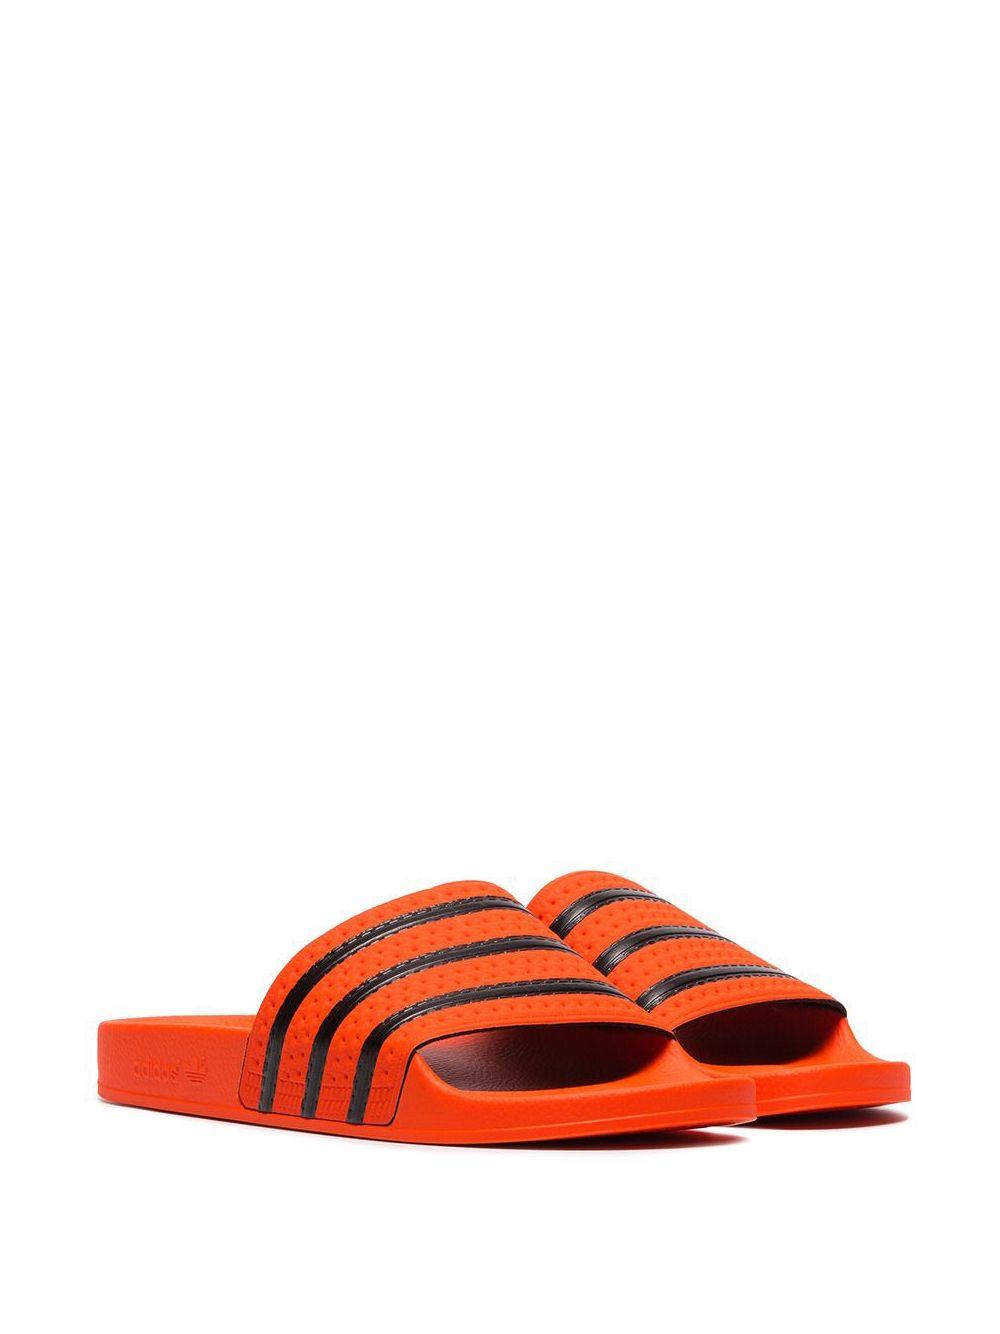 adidas Orange Adilette Rubber Slides for Men | Lyst